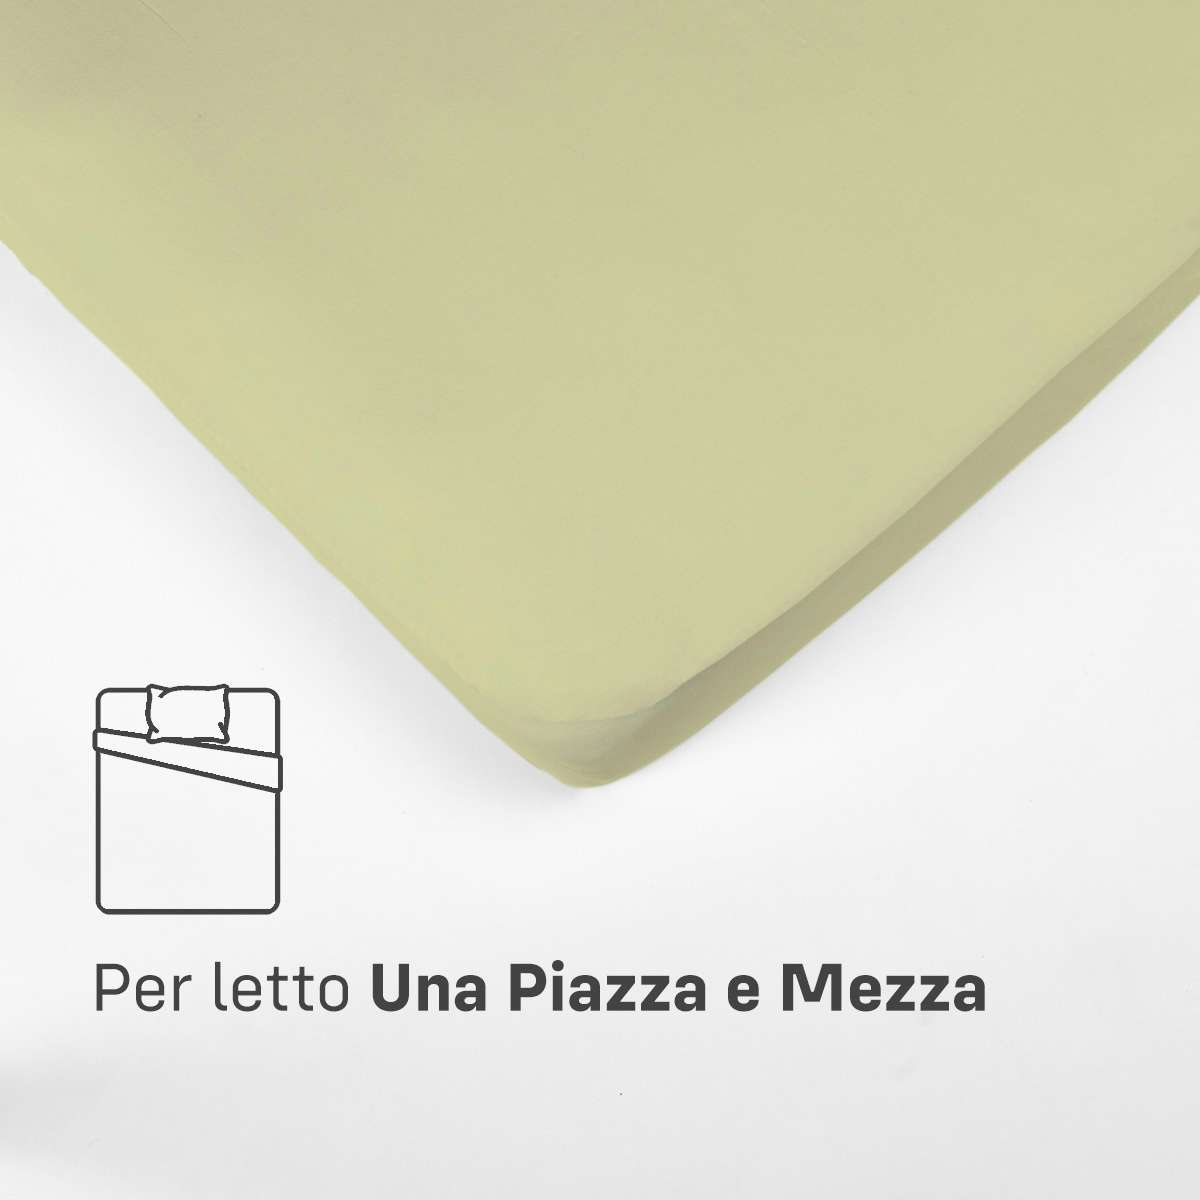 Immagine del prodotto Sotto con Angoli UNA PIAZZA E MEZZA in Cotone Jersey Elasticizzato | Pietro Zanetti Home